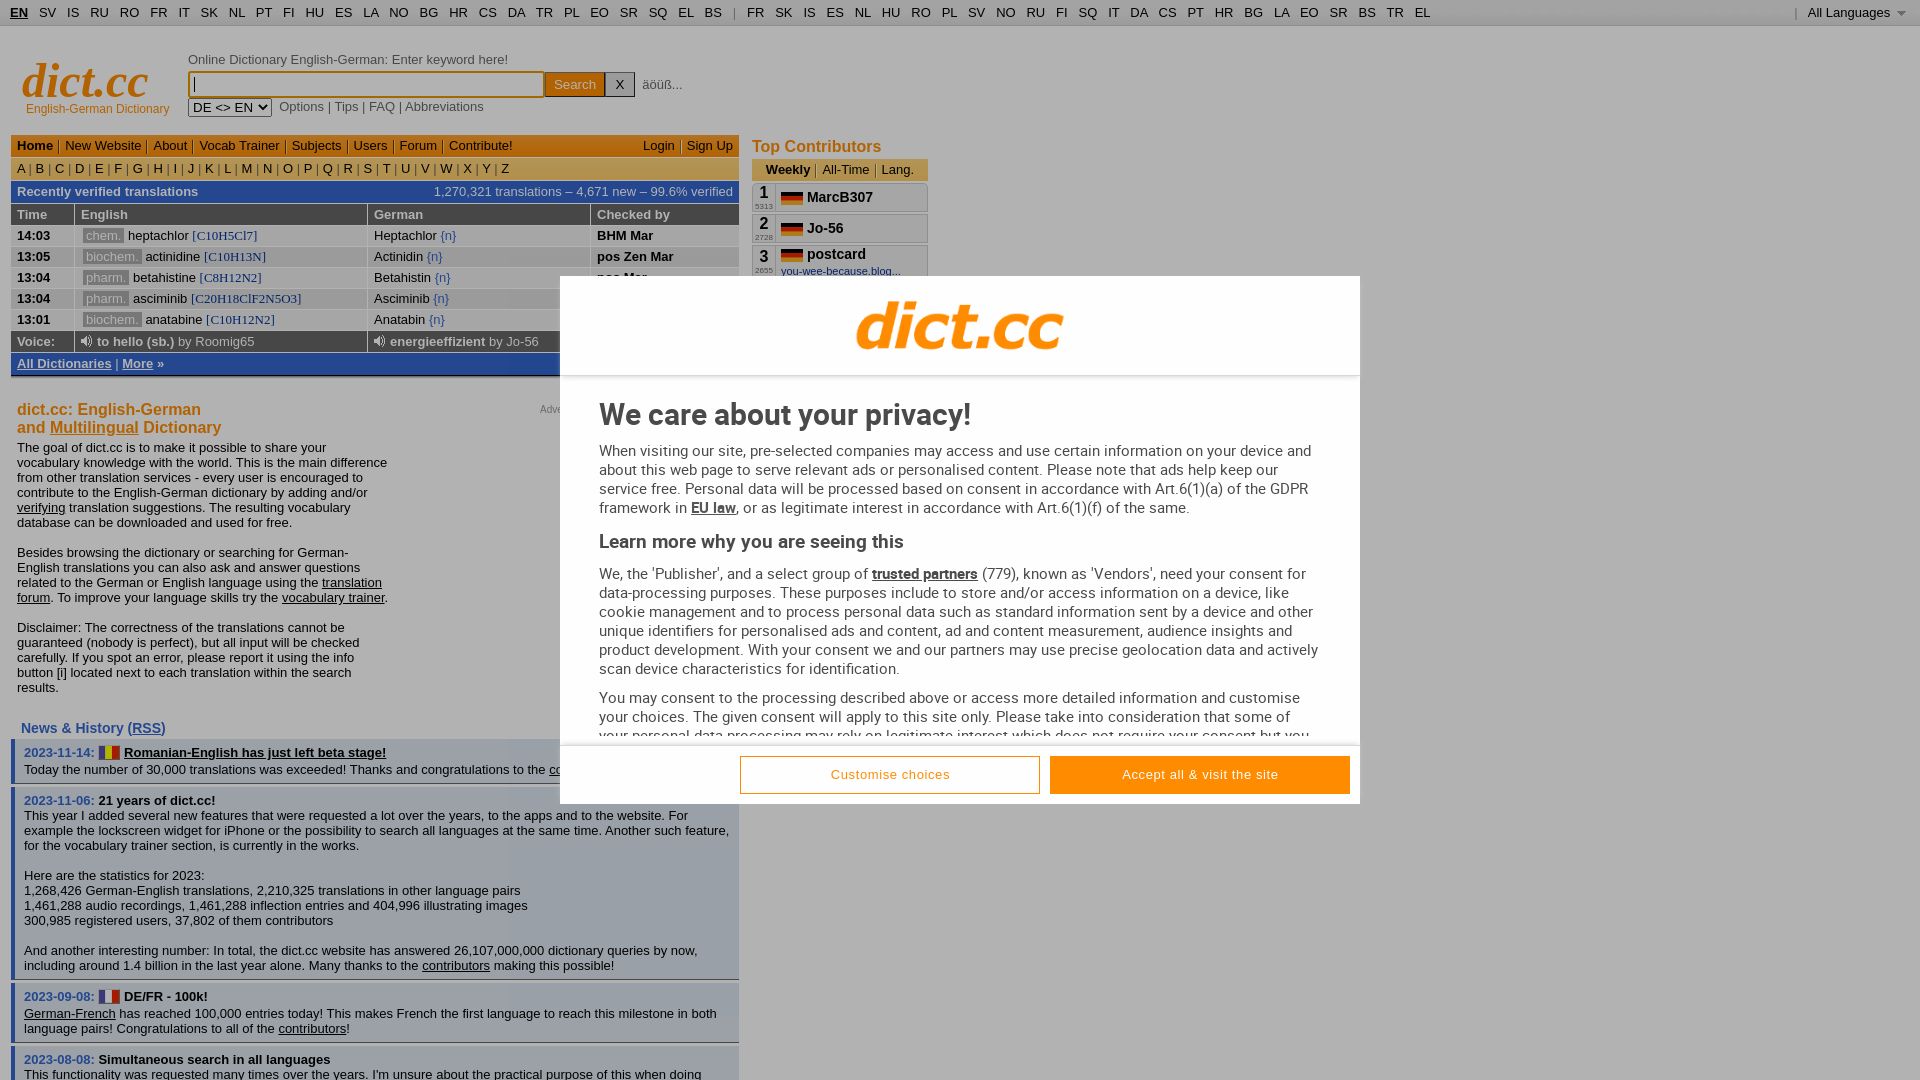 Status do site dict.cc está   ONLINE